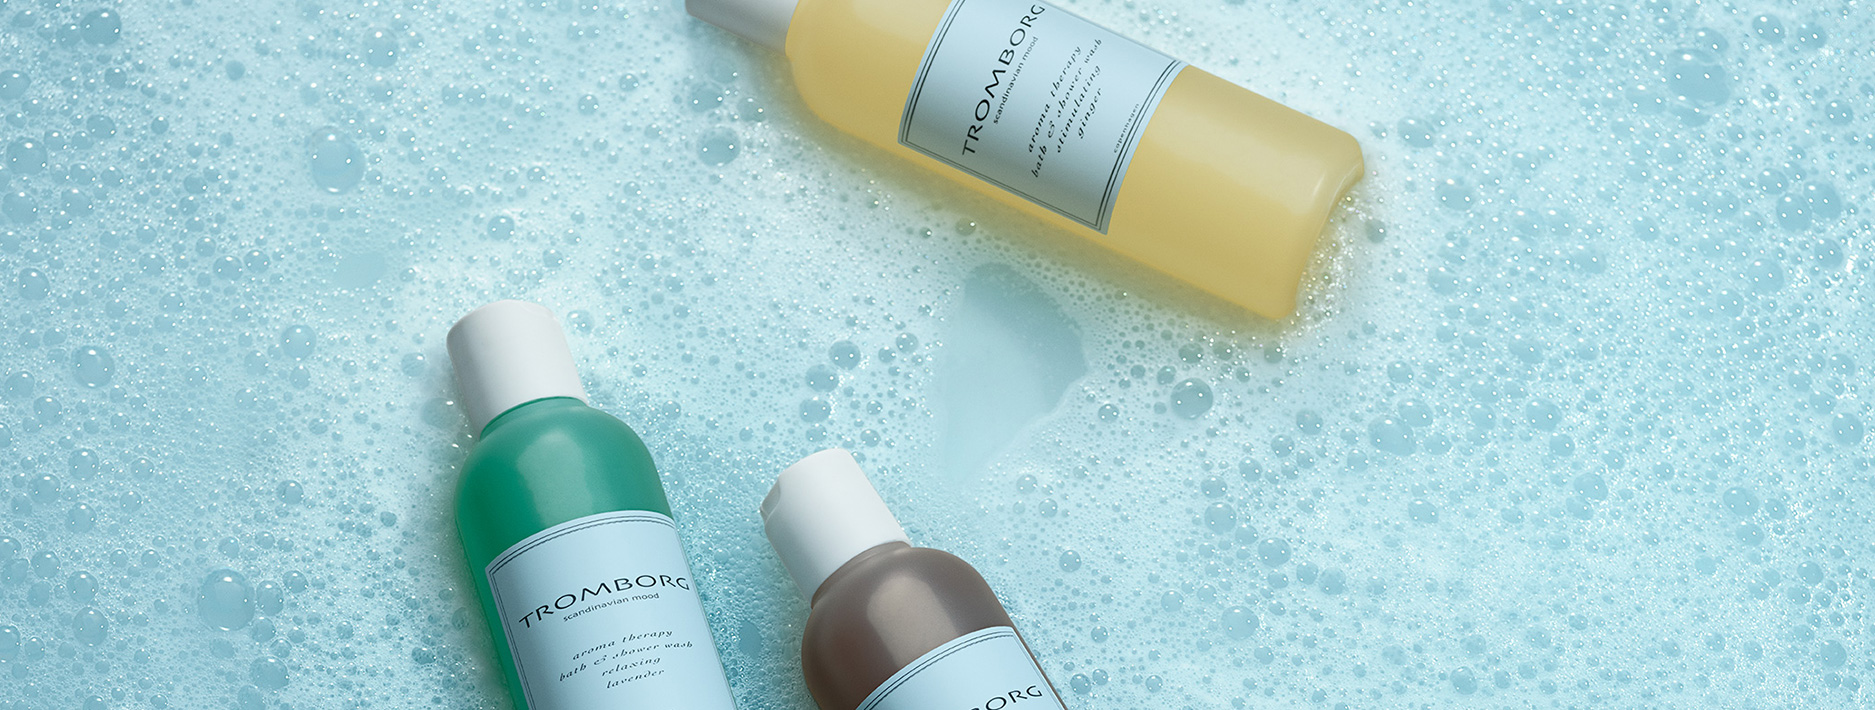 Shower Wash | Naturlig & økologisk hudpleje | Tromborg